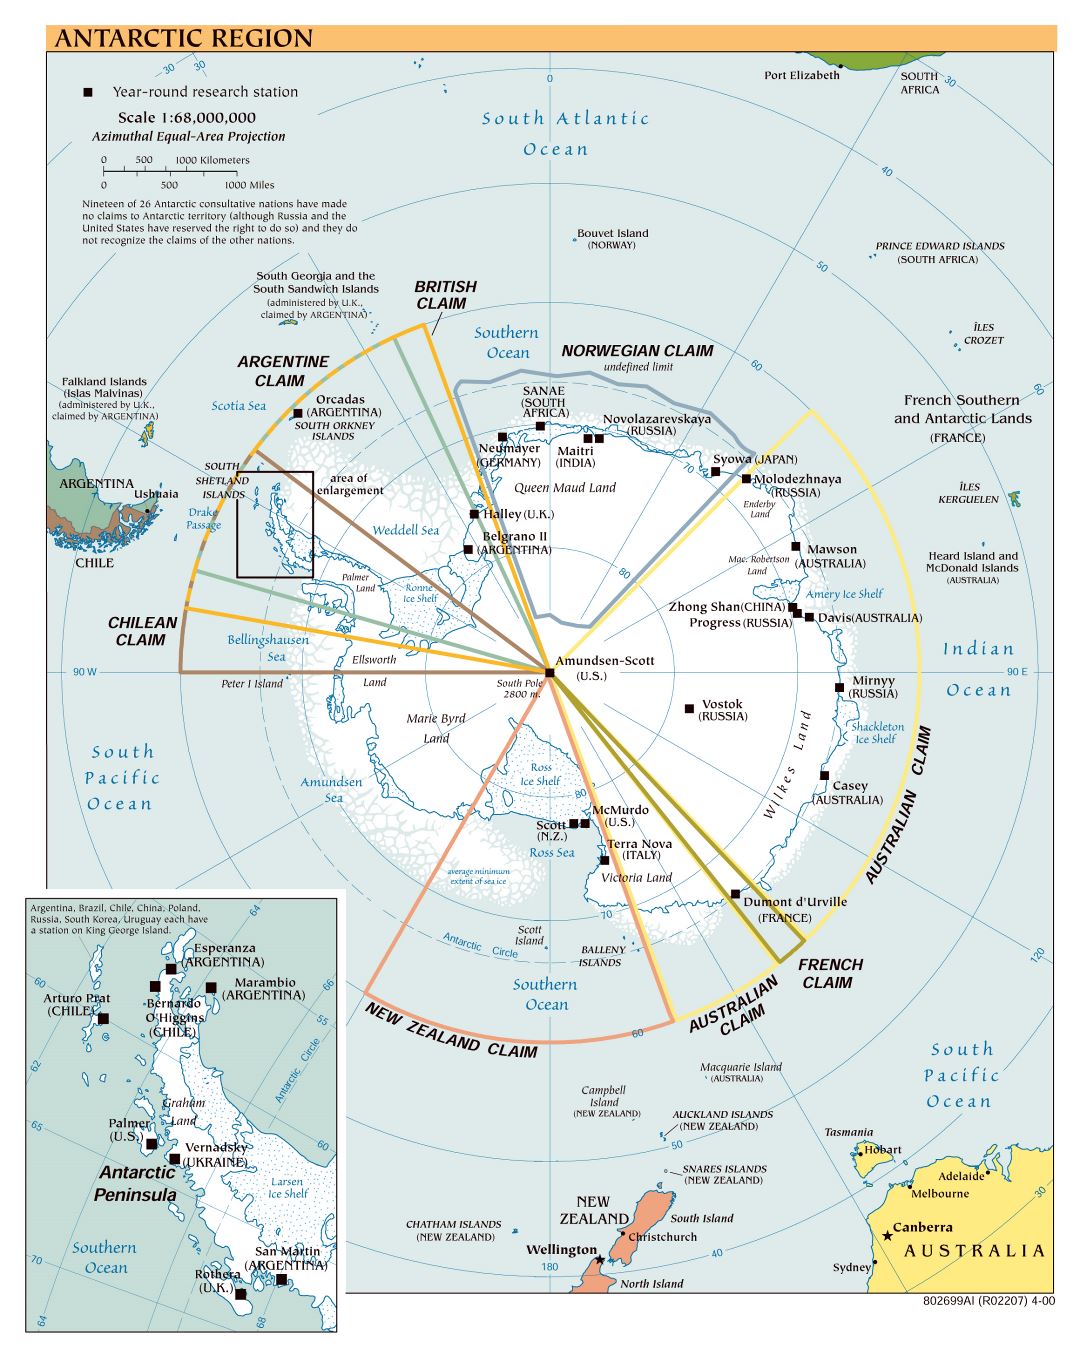 Mapa político a gran escala de la Región Antártica - 2000